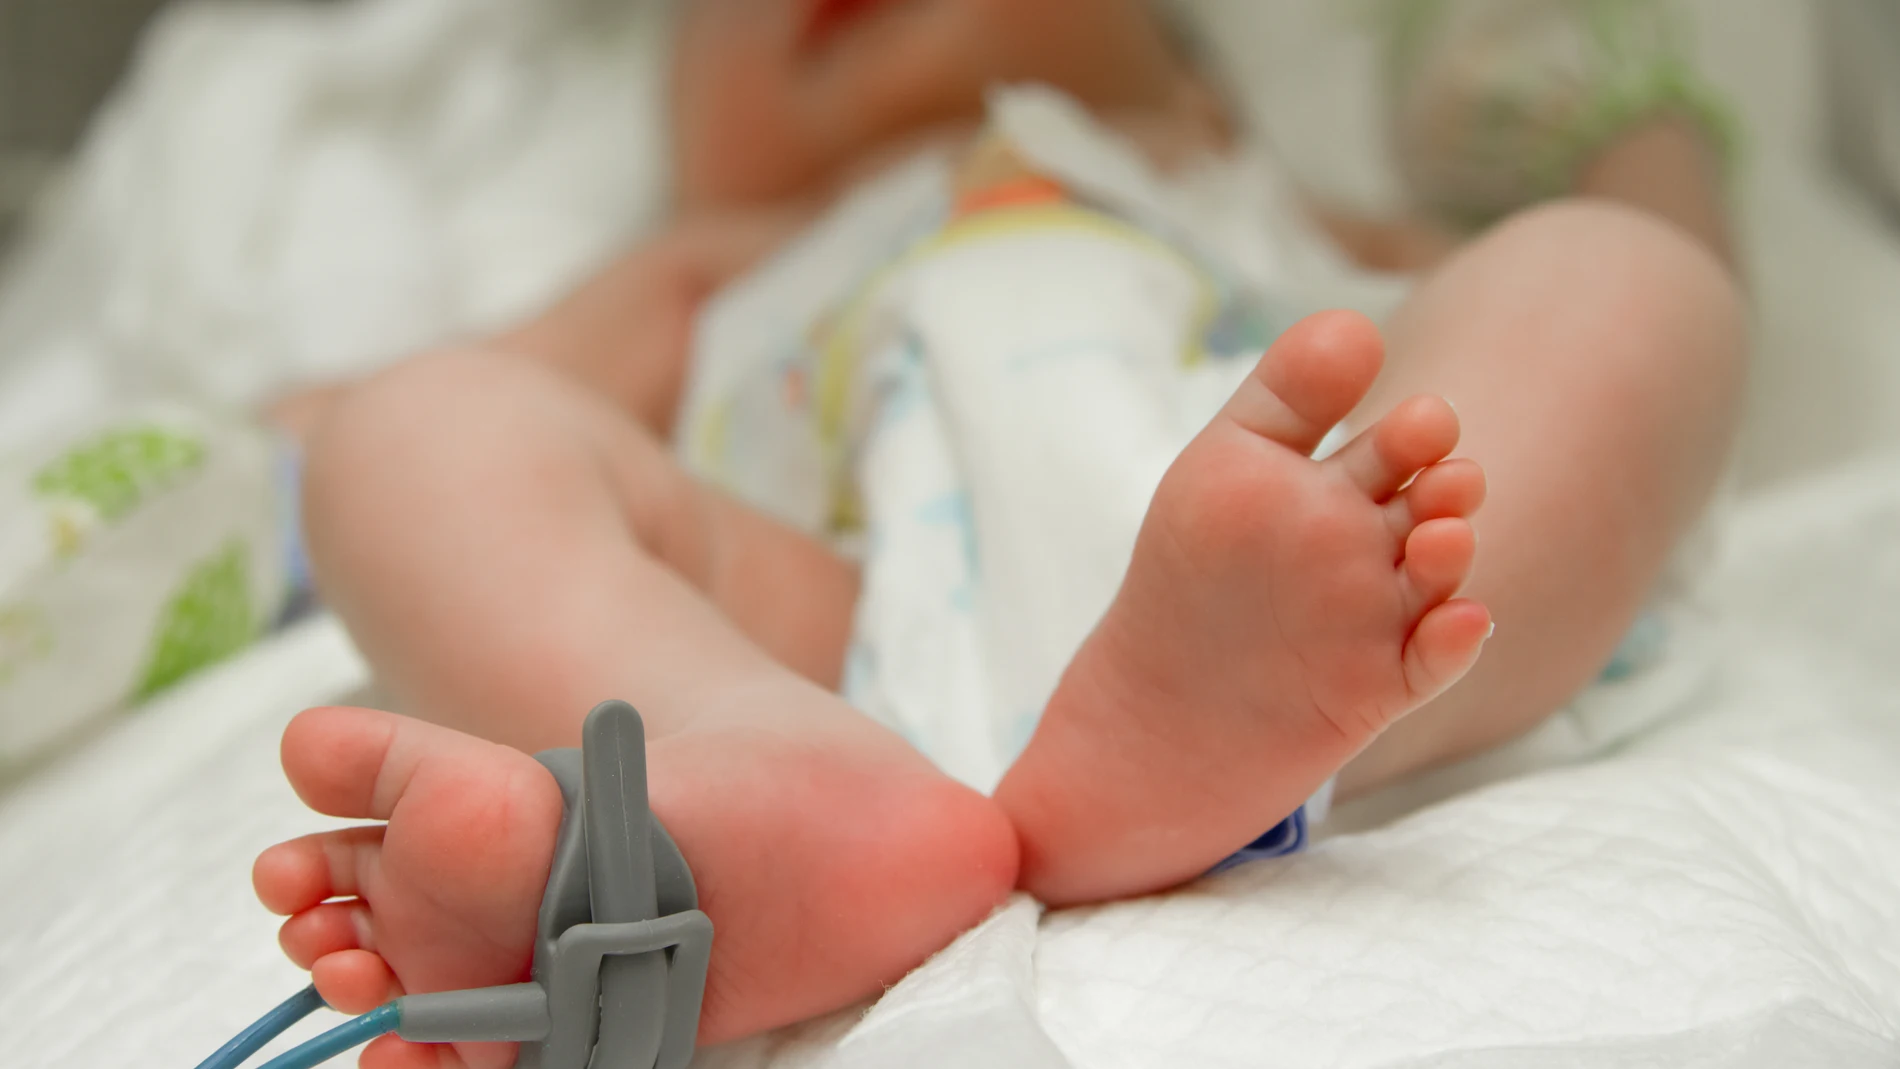 El bebé nacido en Irak se trata del primer caso de trifalia en la historia. Imagen de archivo